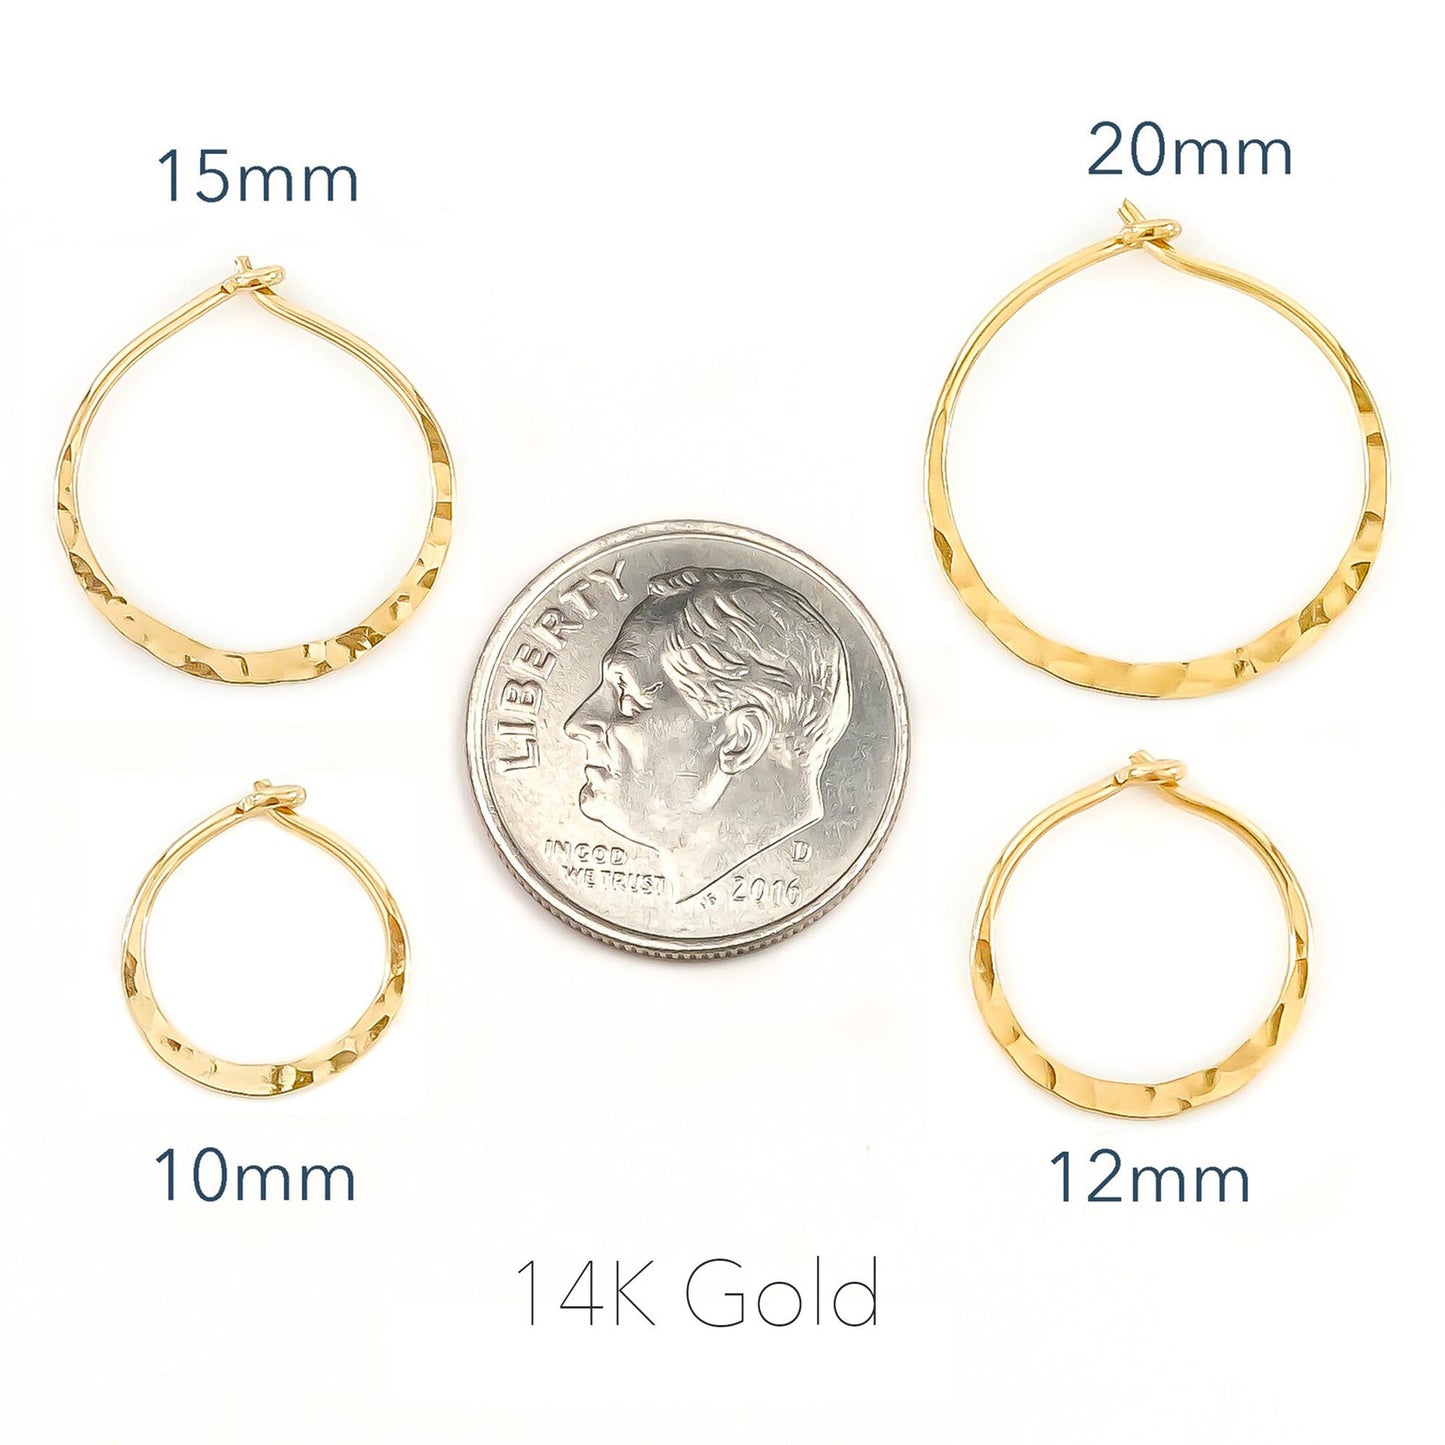 14K Gold Hammered Hoops, 12mm